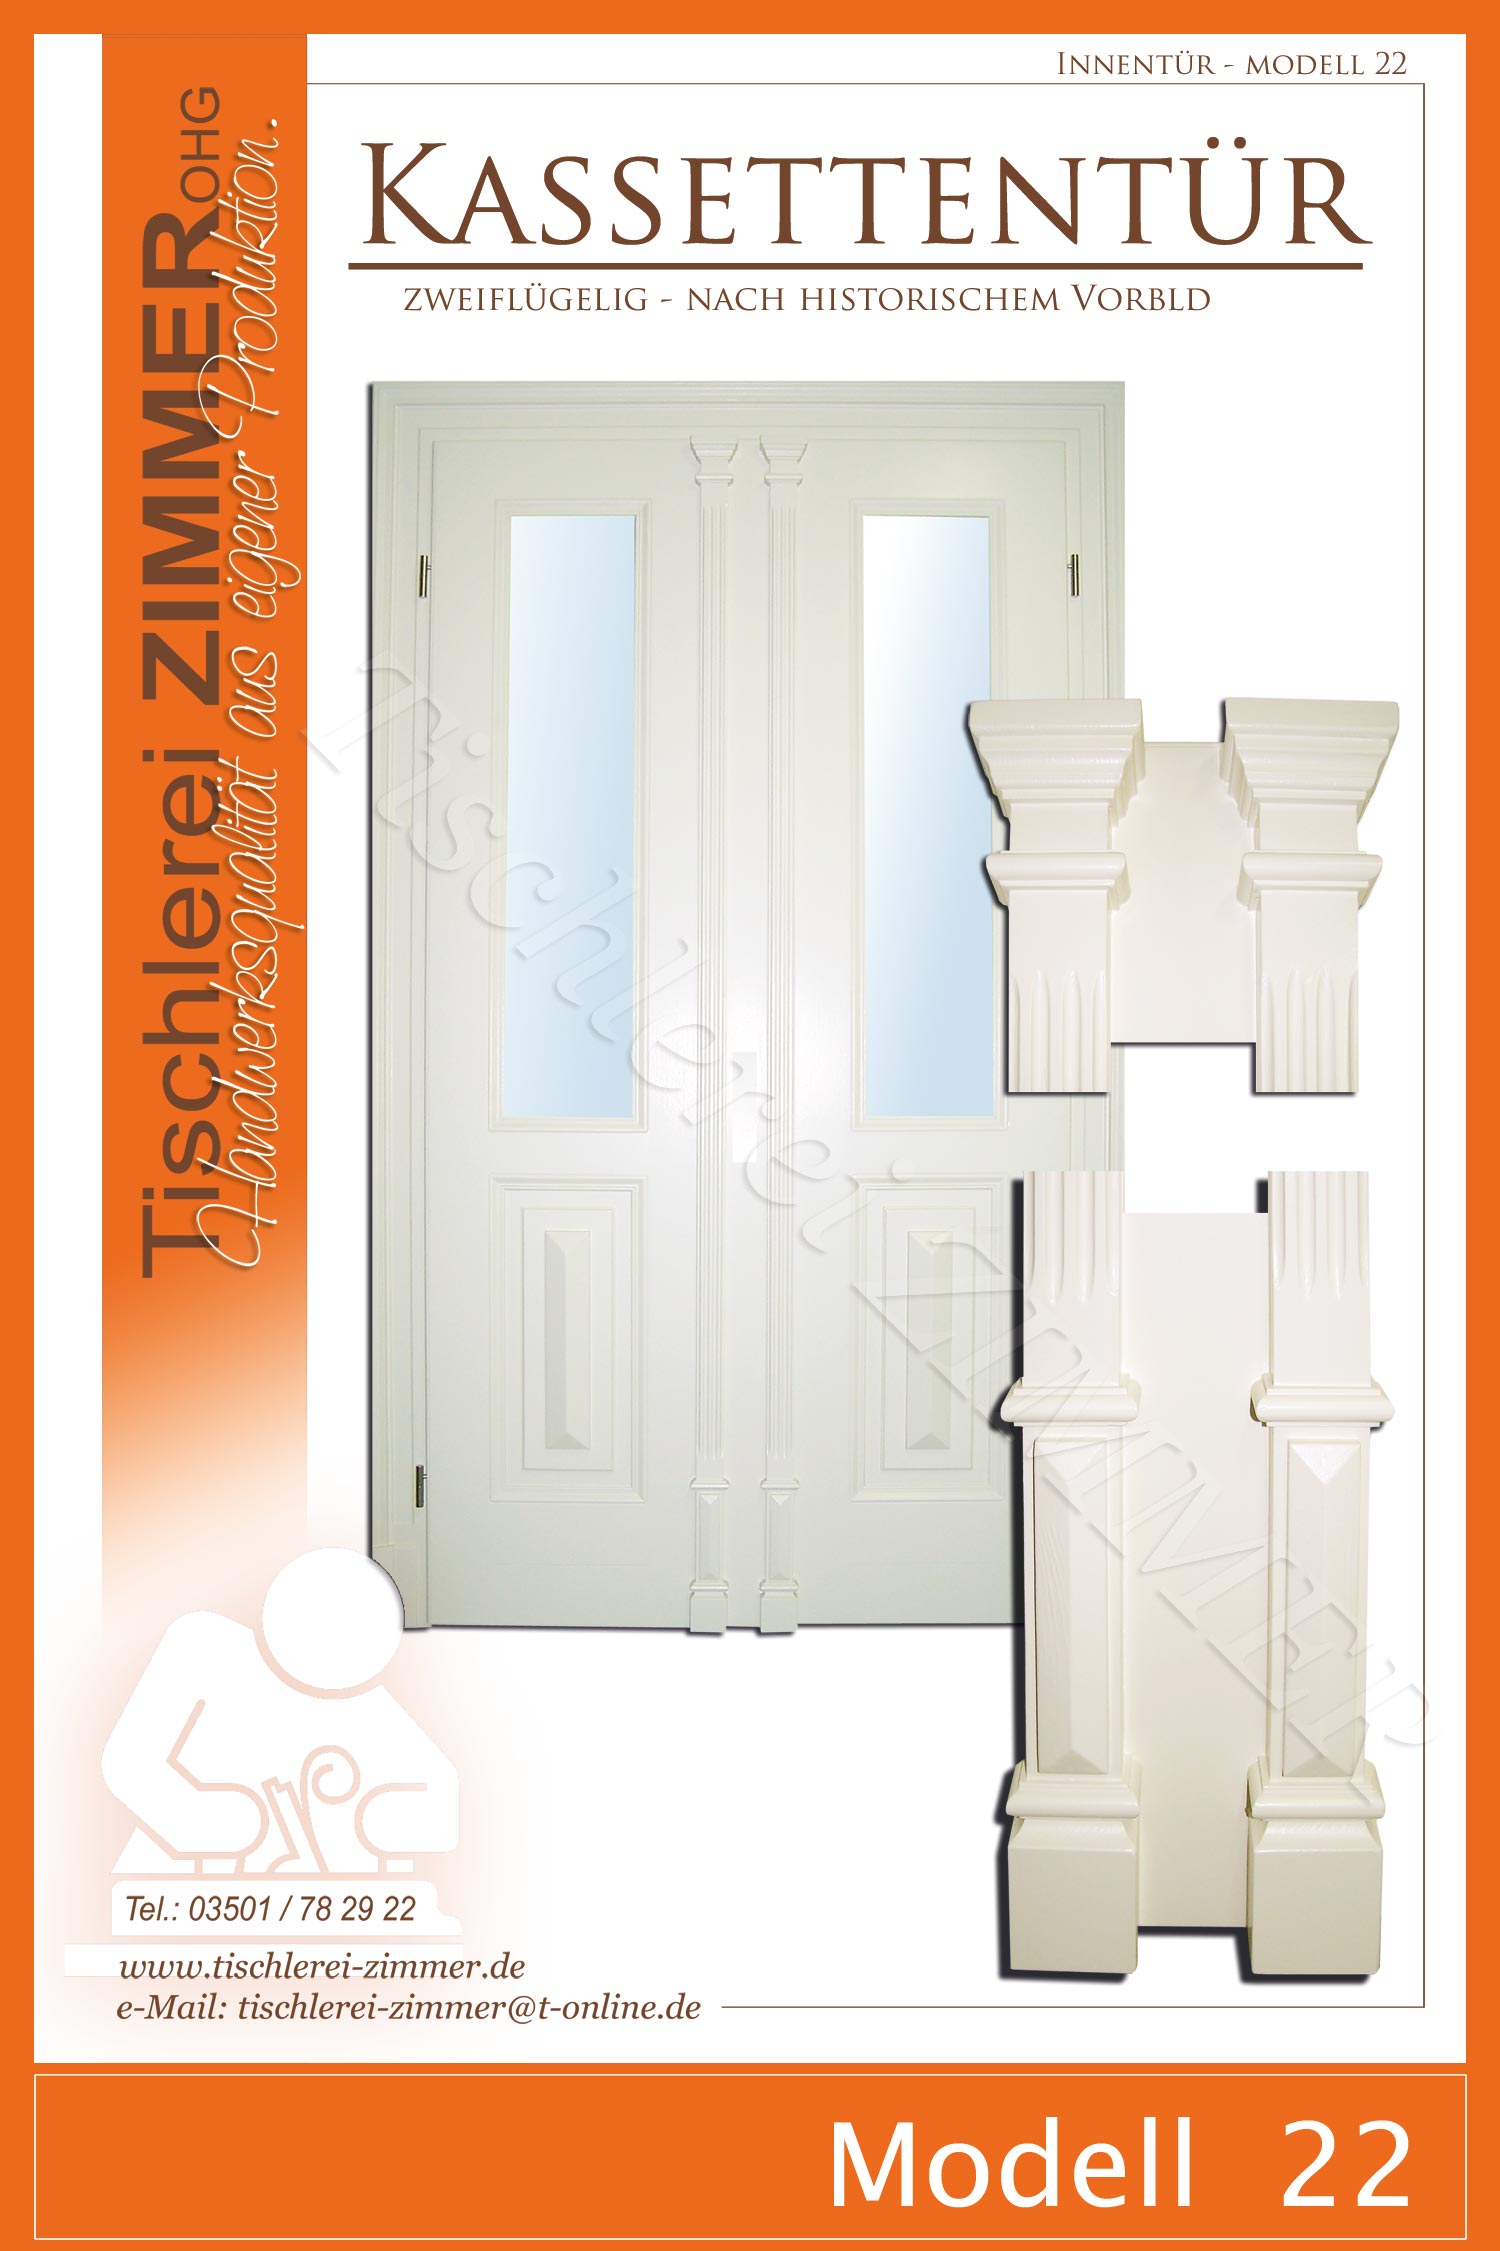 weiße zweiflügelige Kassettentür mit doppelter Zierschlagleiste nach historischem Vorbild